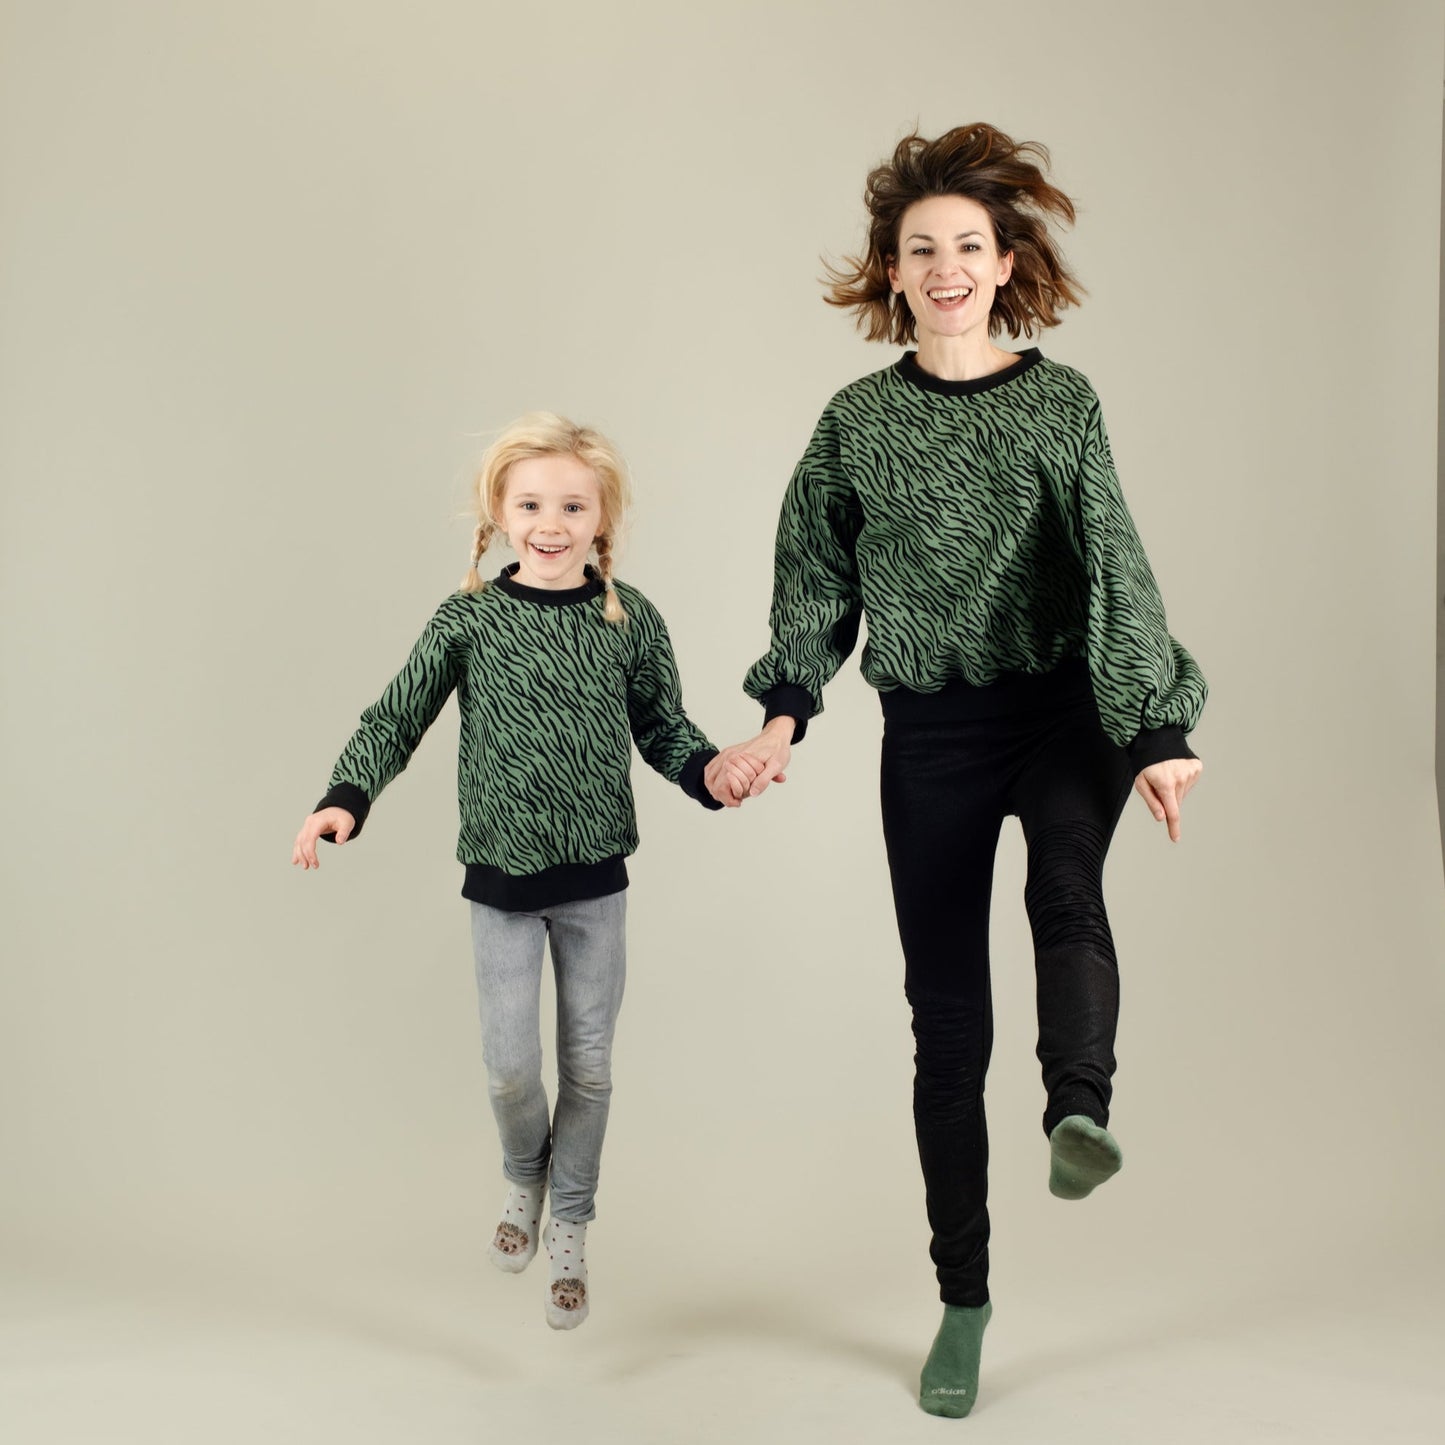 Damen Sweater Bio Baumwolle Grün mit Zebramuster und Kinder Pulli, Mutter-Kind-Partnerlook; Urheber: Mini & Eve